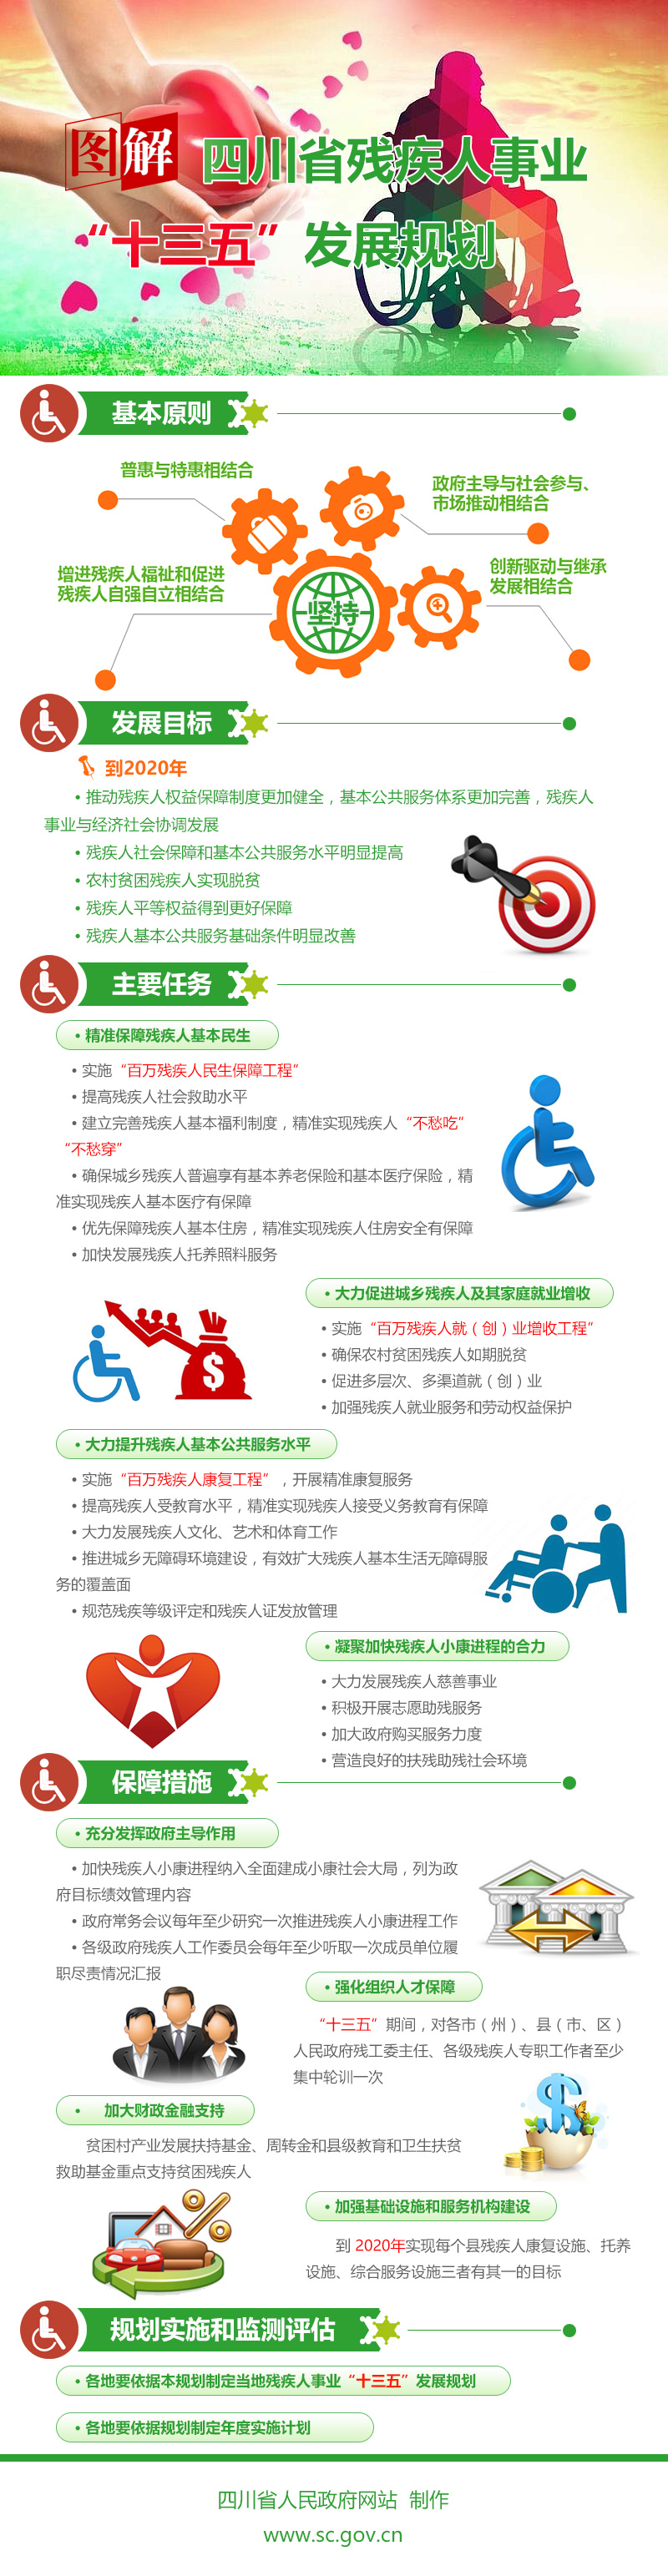 图解四川省残疾人事业“十三五”发展规划